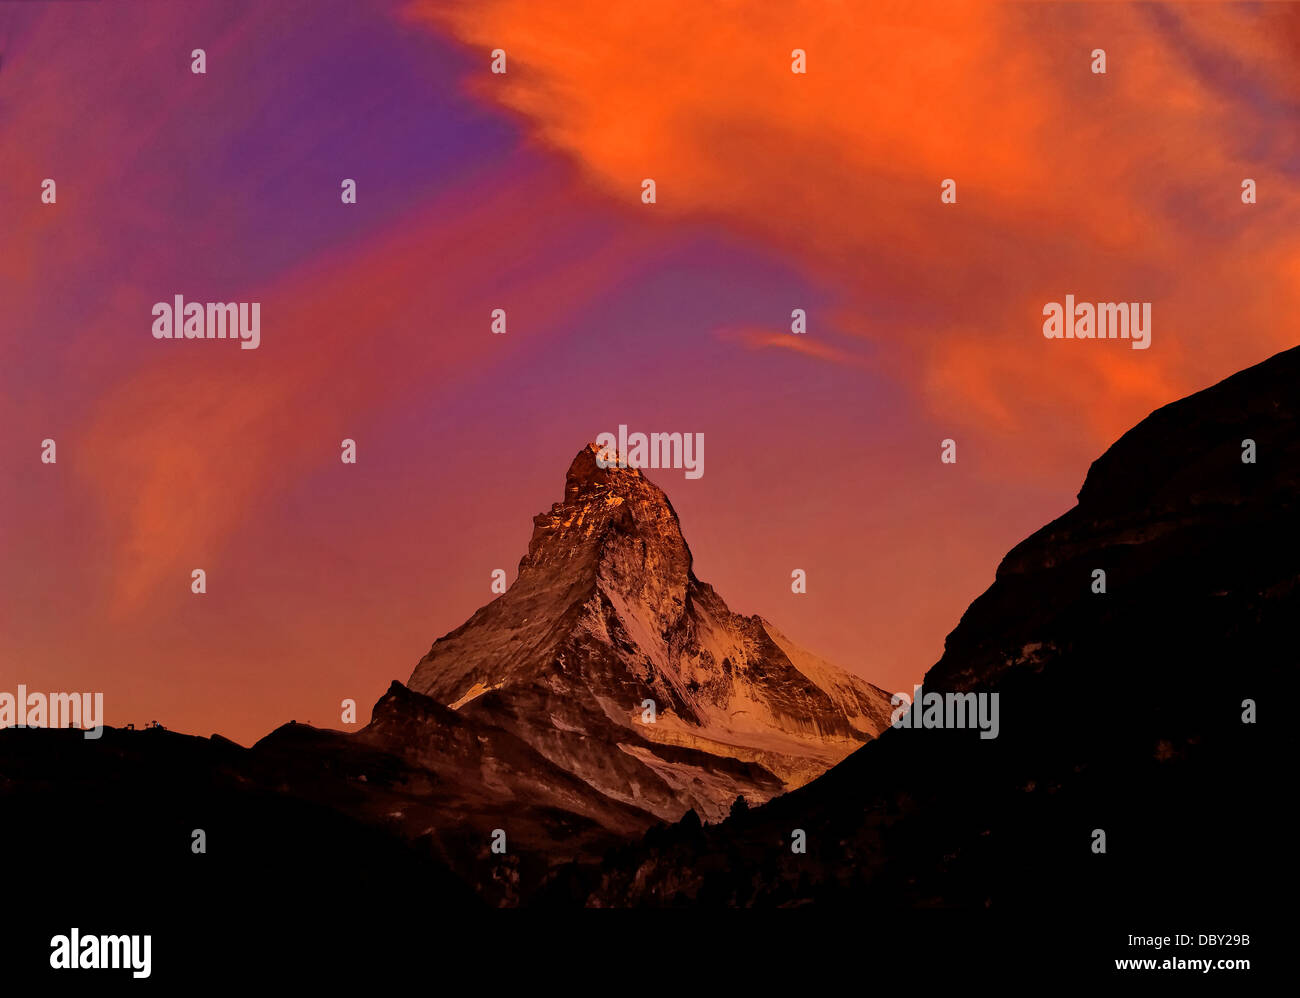 El Matterhorn justo antes del amanecer, las nubes reflejan los primeros rayos del sol. Foto de stock